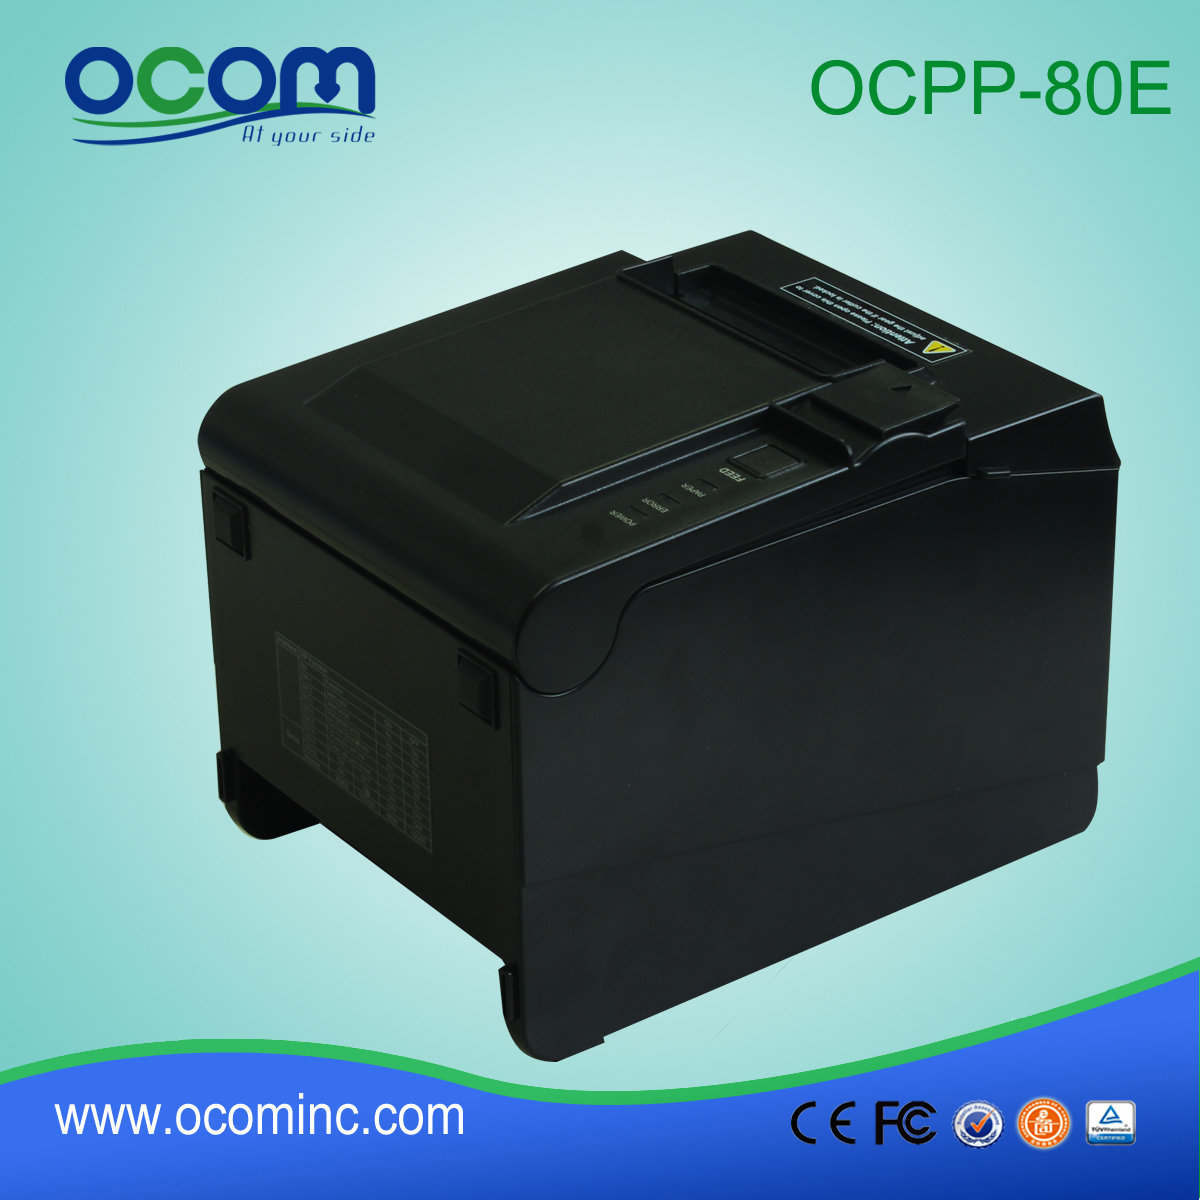 中国便宜的qr码热敏打印机 (OCPP-80E)